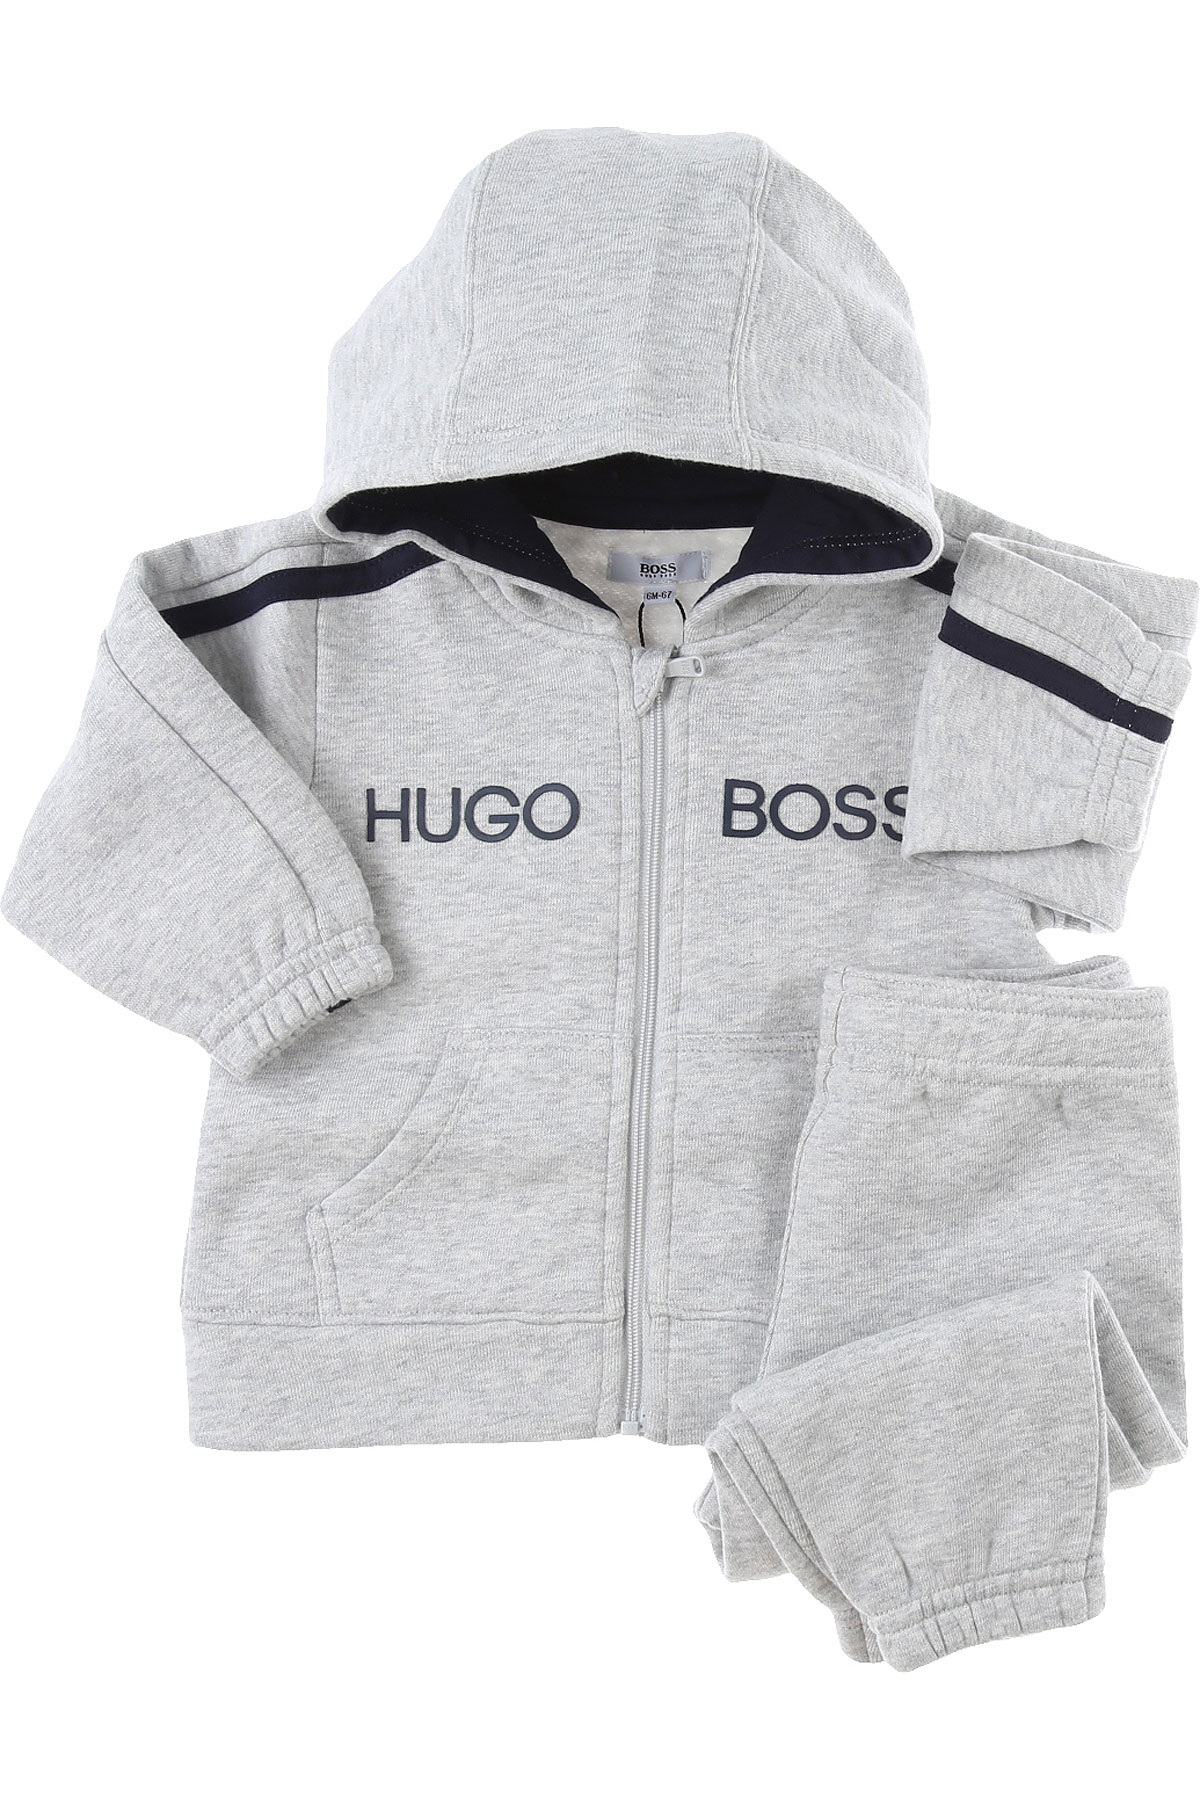 Hugo Boss Baby Set für Jungen Günstig im Sale, Grau, Baumwolle, 2017, 18M 3M 6M 9M